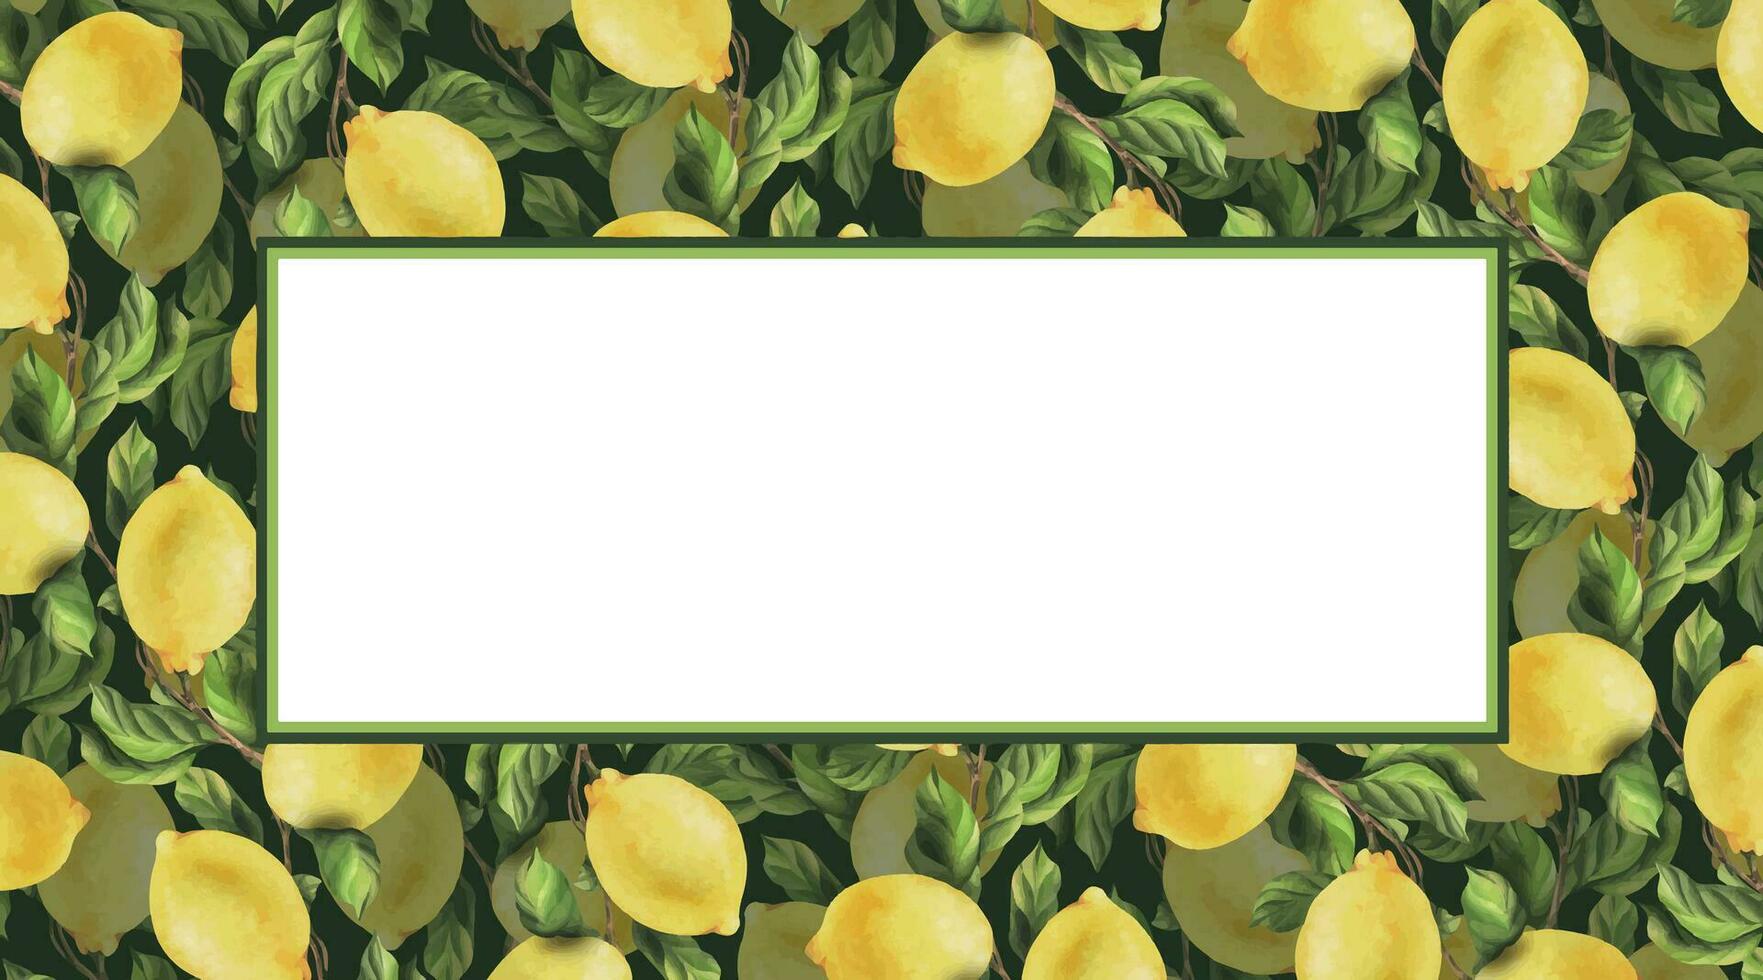 citroner är gul, saftig, mogen med grön löv, blomma knoppar på de grenar, hela och skivor. vattenfärg, hand dragen botanisk illustration. ram, mall på en vit bakgrund. vektor